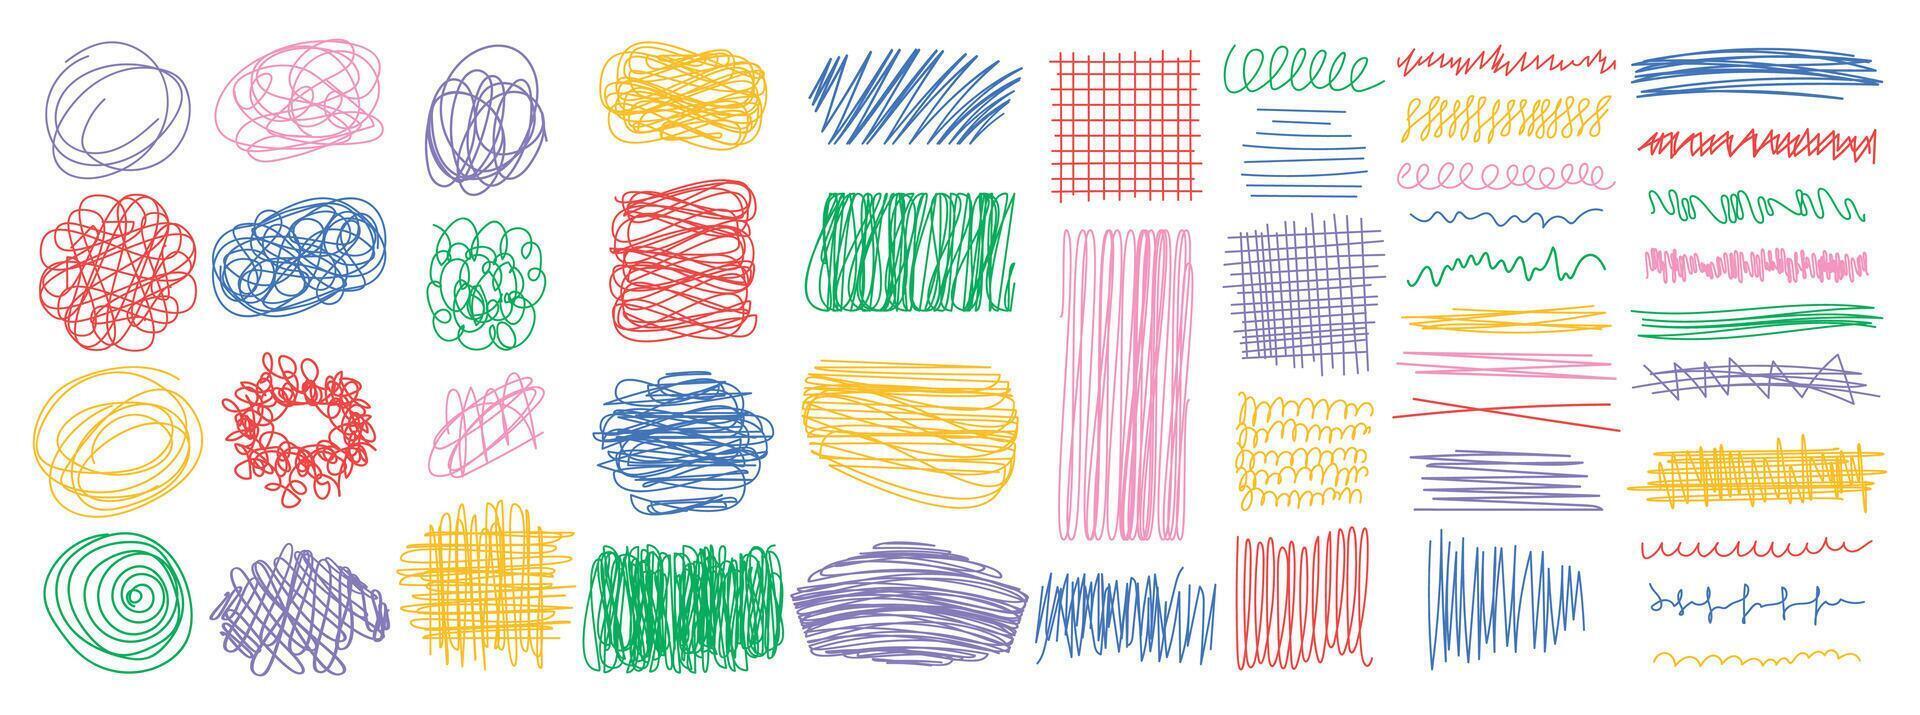 färgrik klotter av abstrakt geometrisk rader, former. grov stroke med en penna eller penna. hand dragen borsta stroke element. modern vektor illustration.